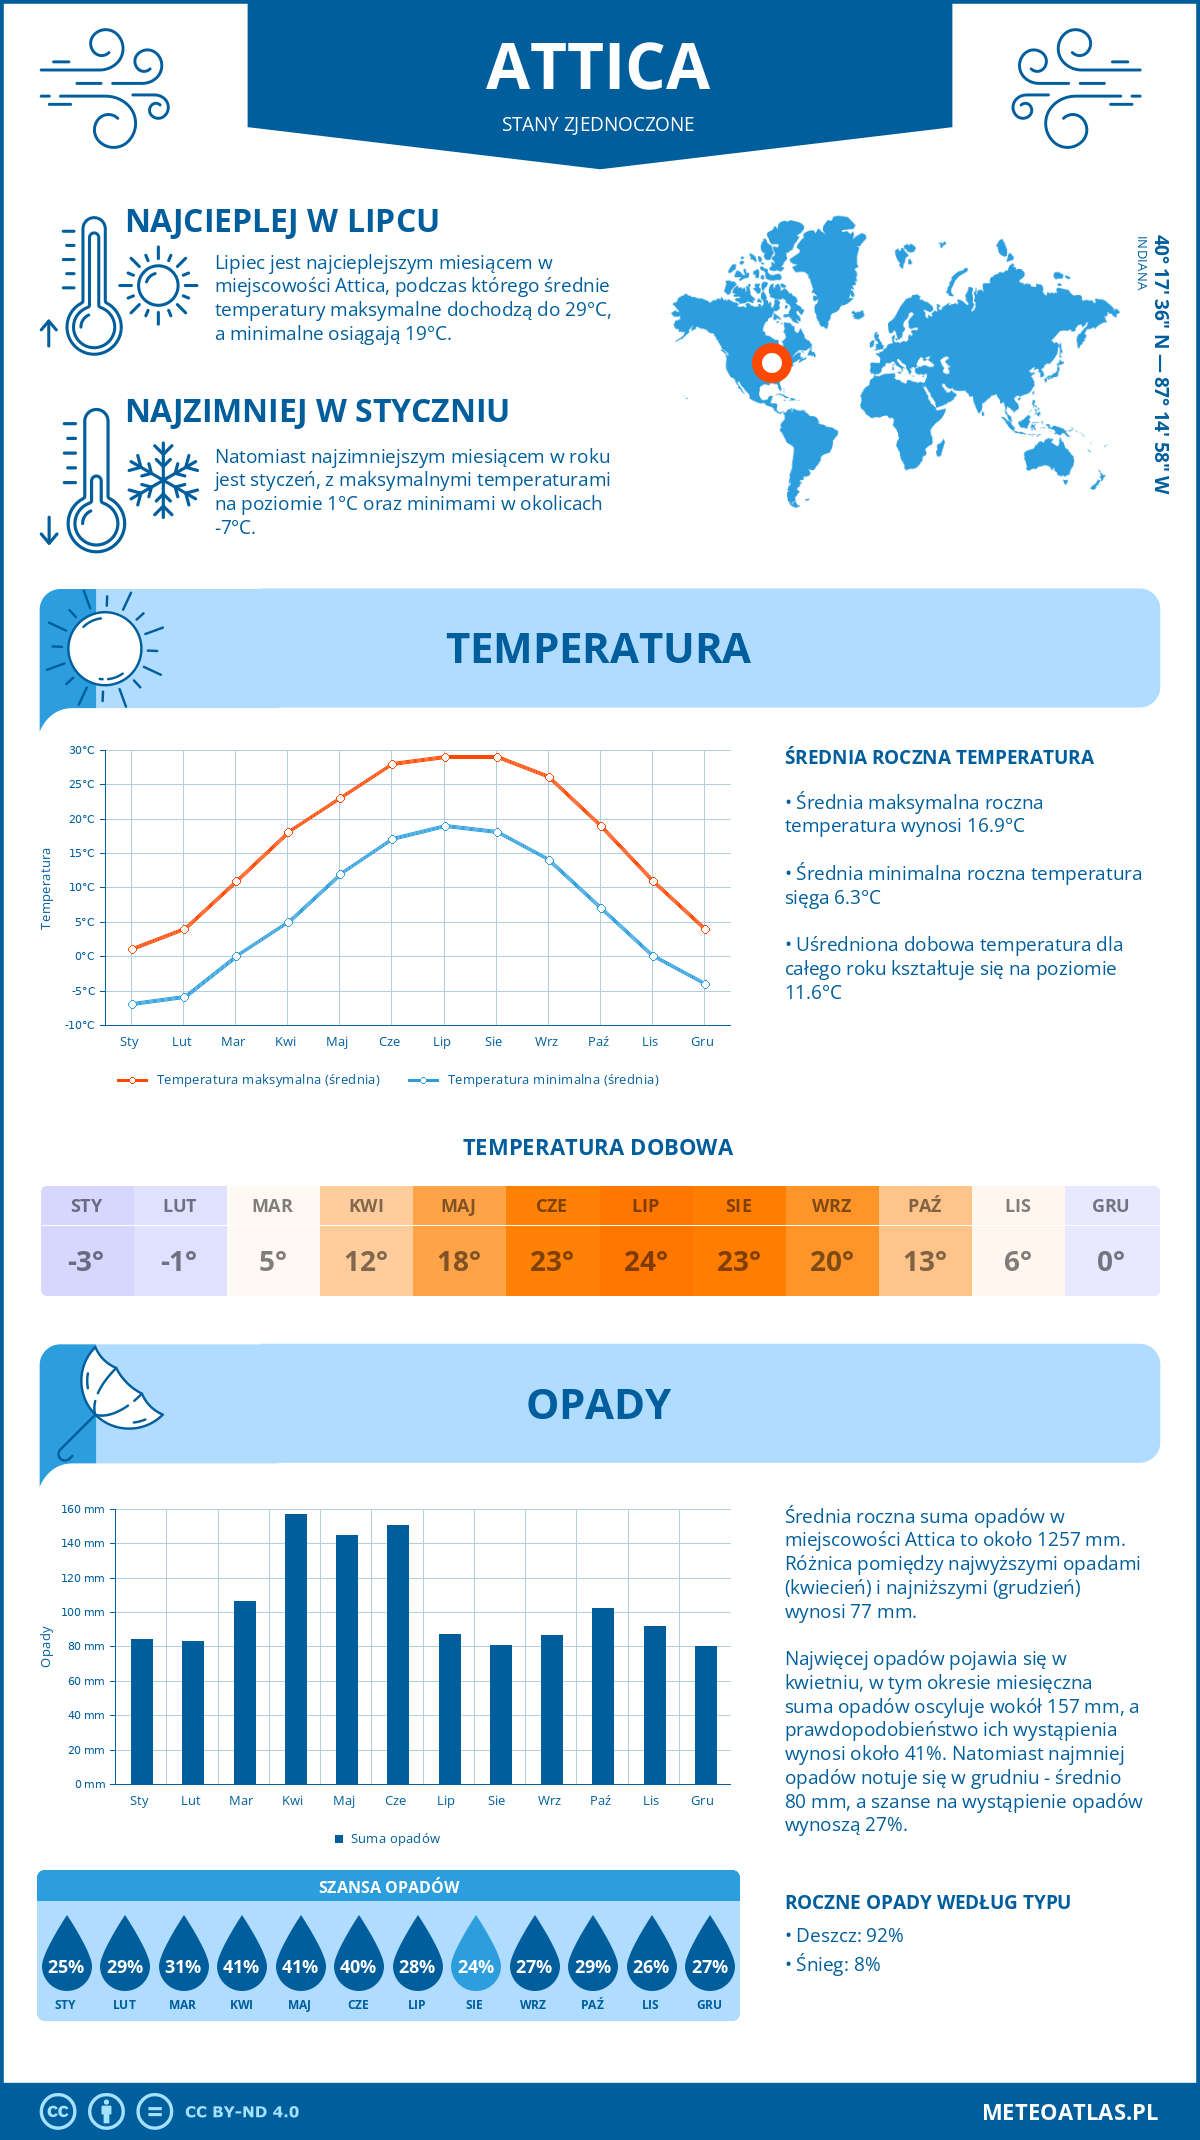 Pogoda Attica (Stany Zjednoczone). Temperatura oraz opady.